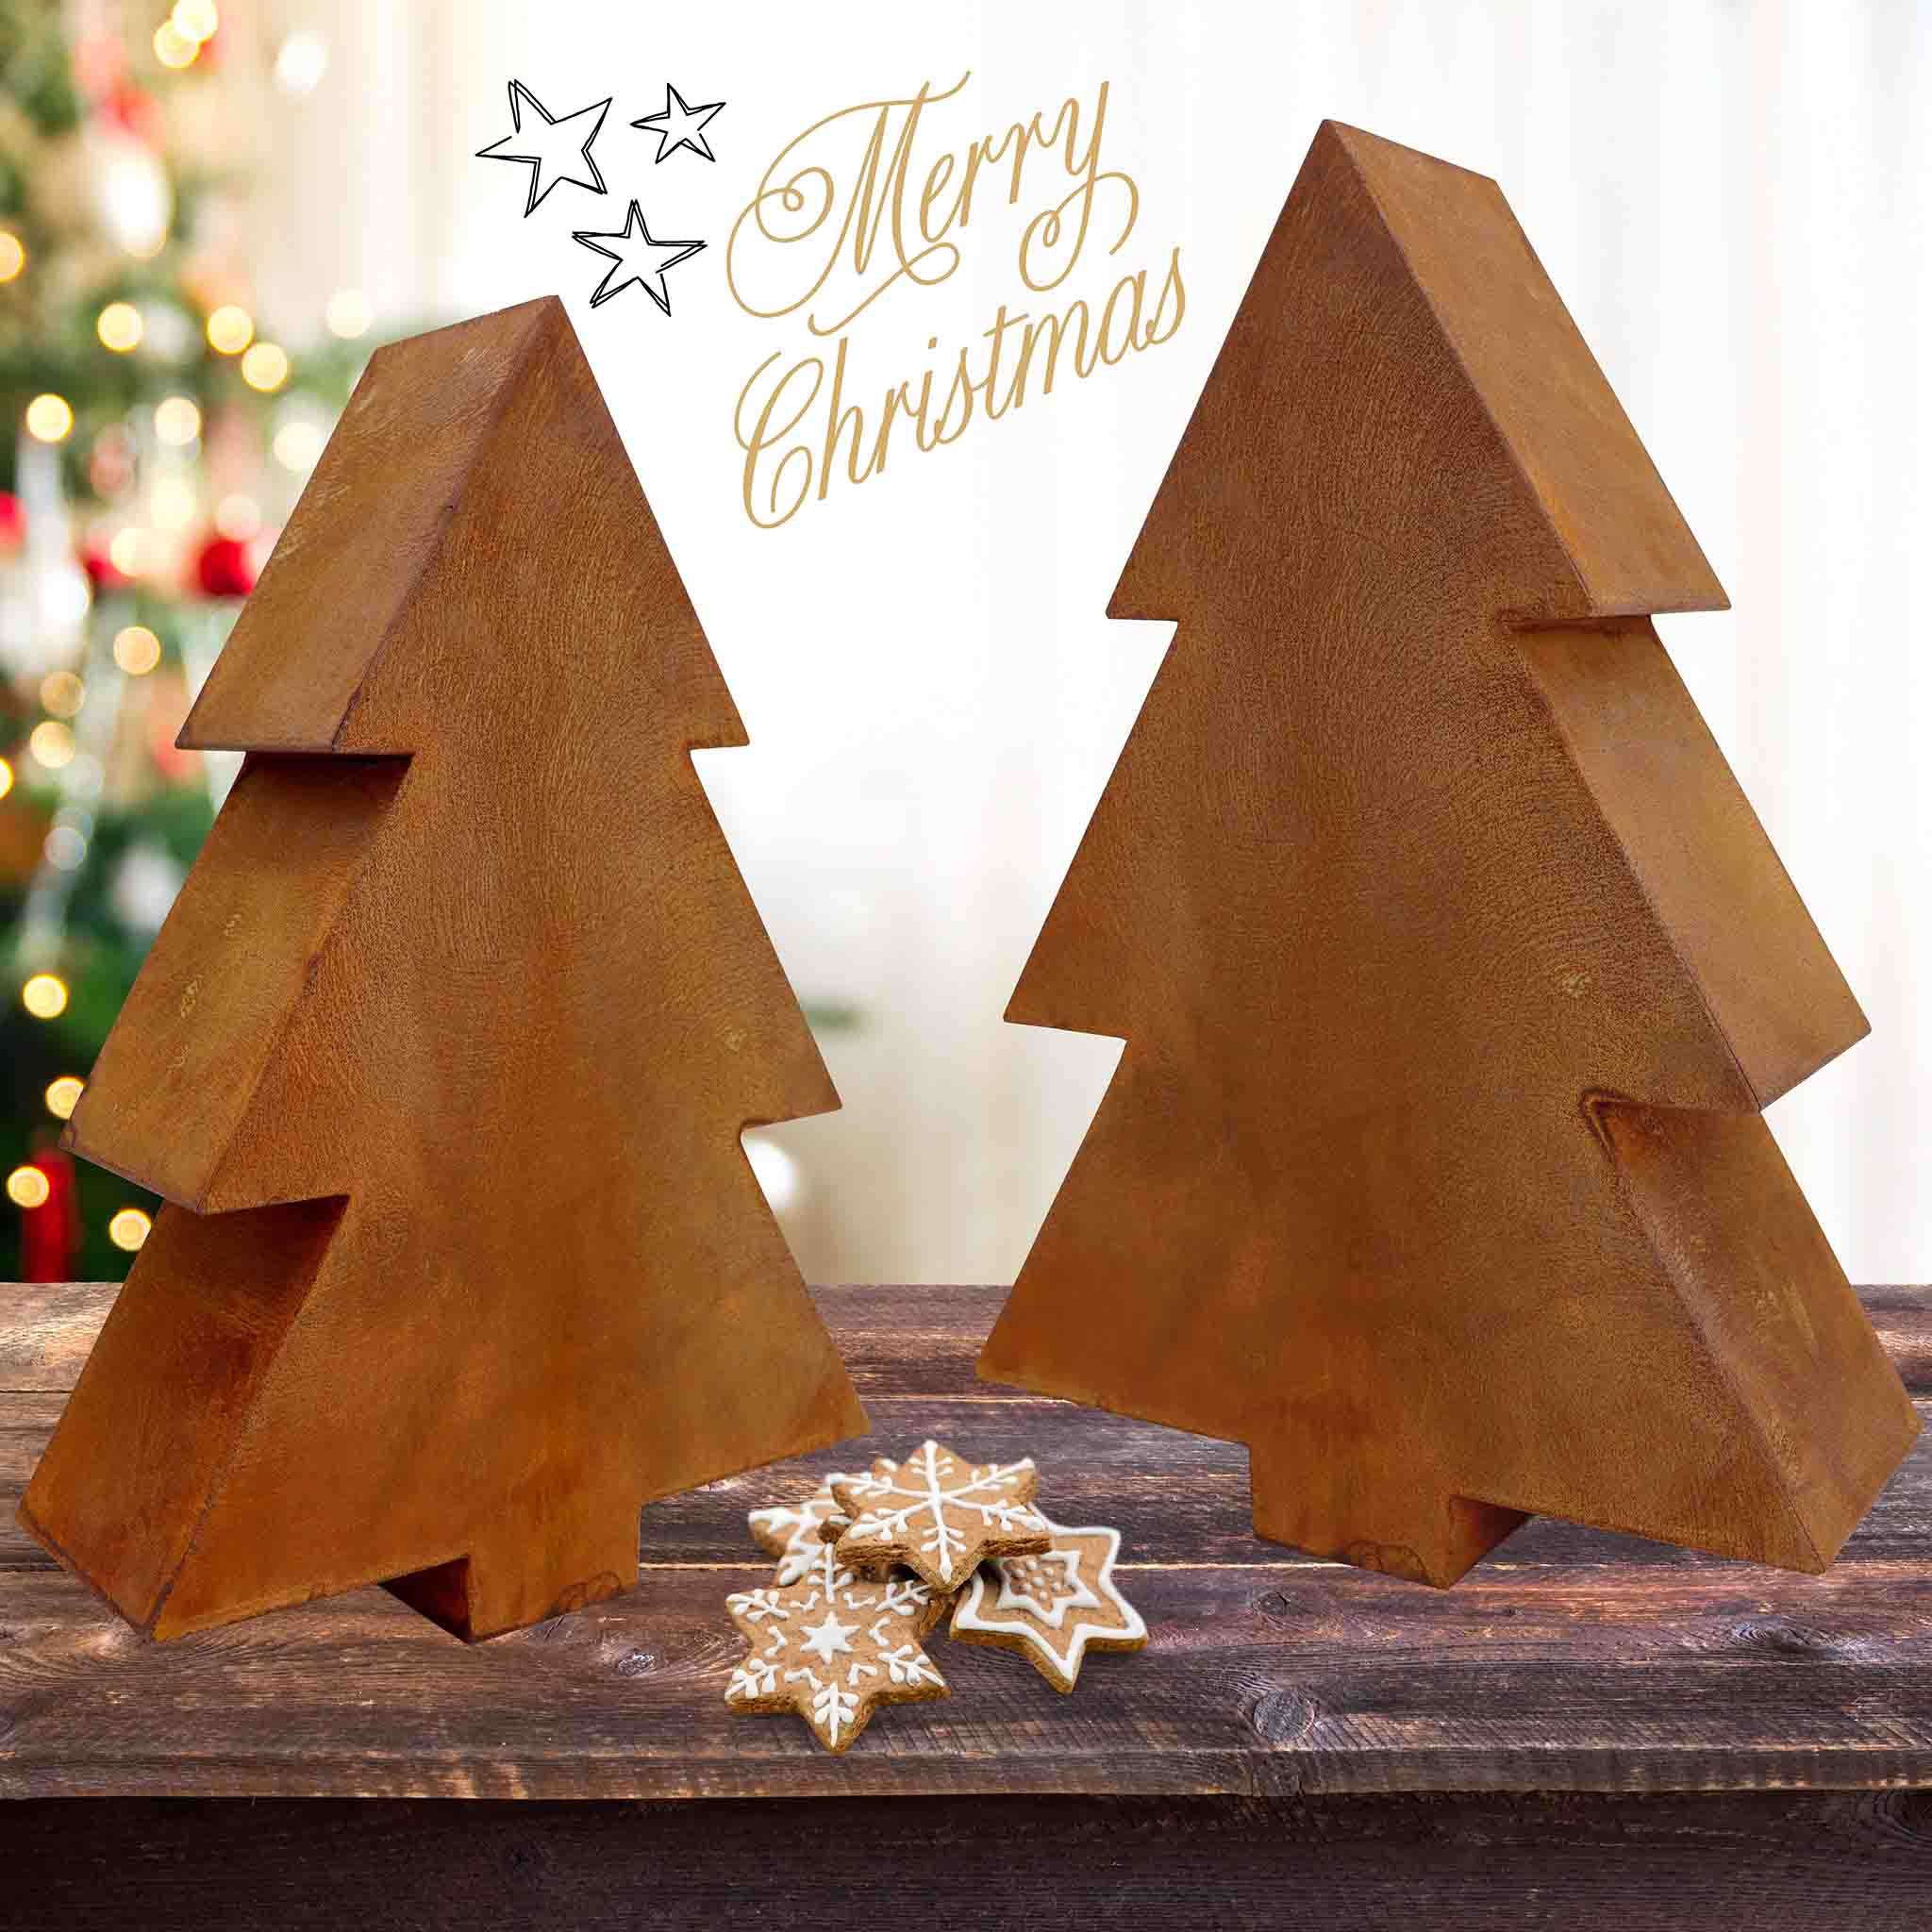 Rostiger Metall-Tannenbaum im 3D-Design, perfekt als besondere Tischdeko für die Weihnachtszeit